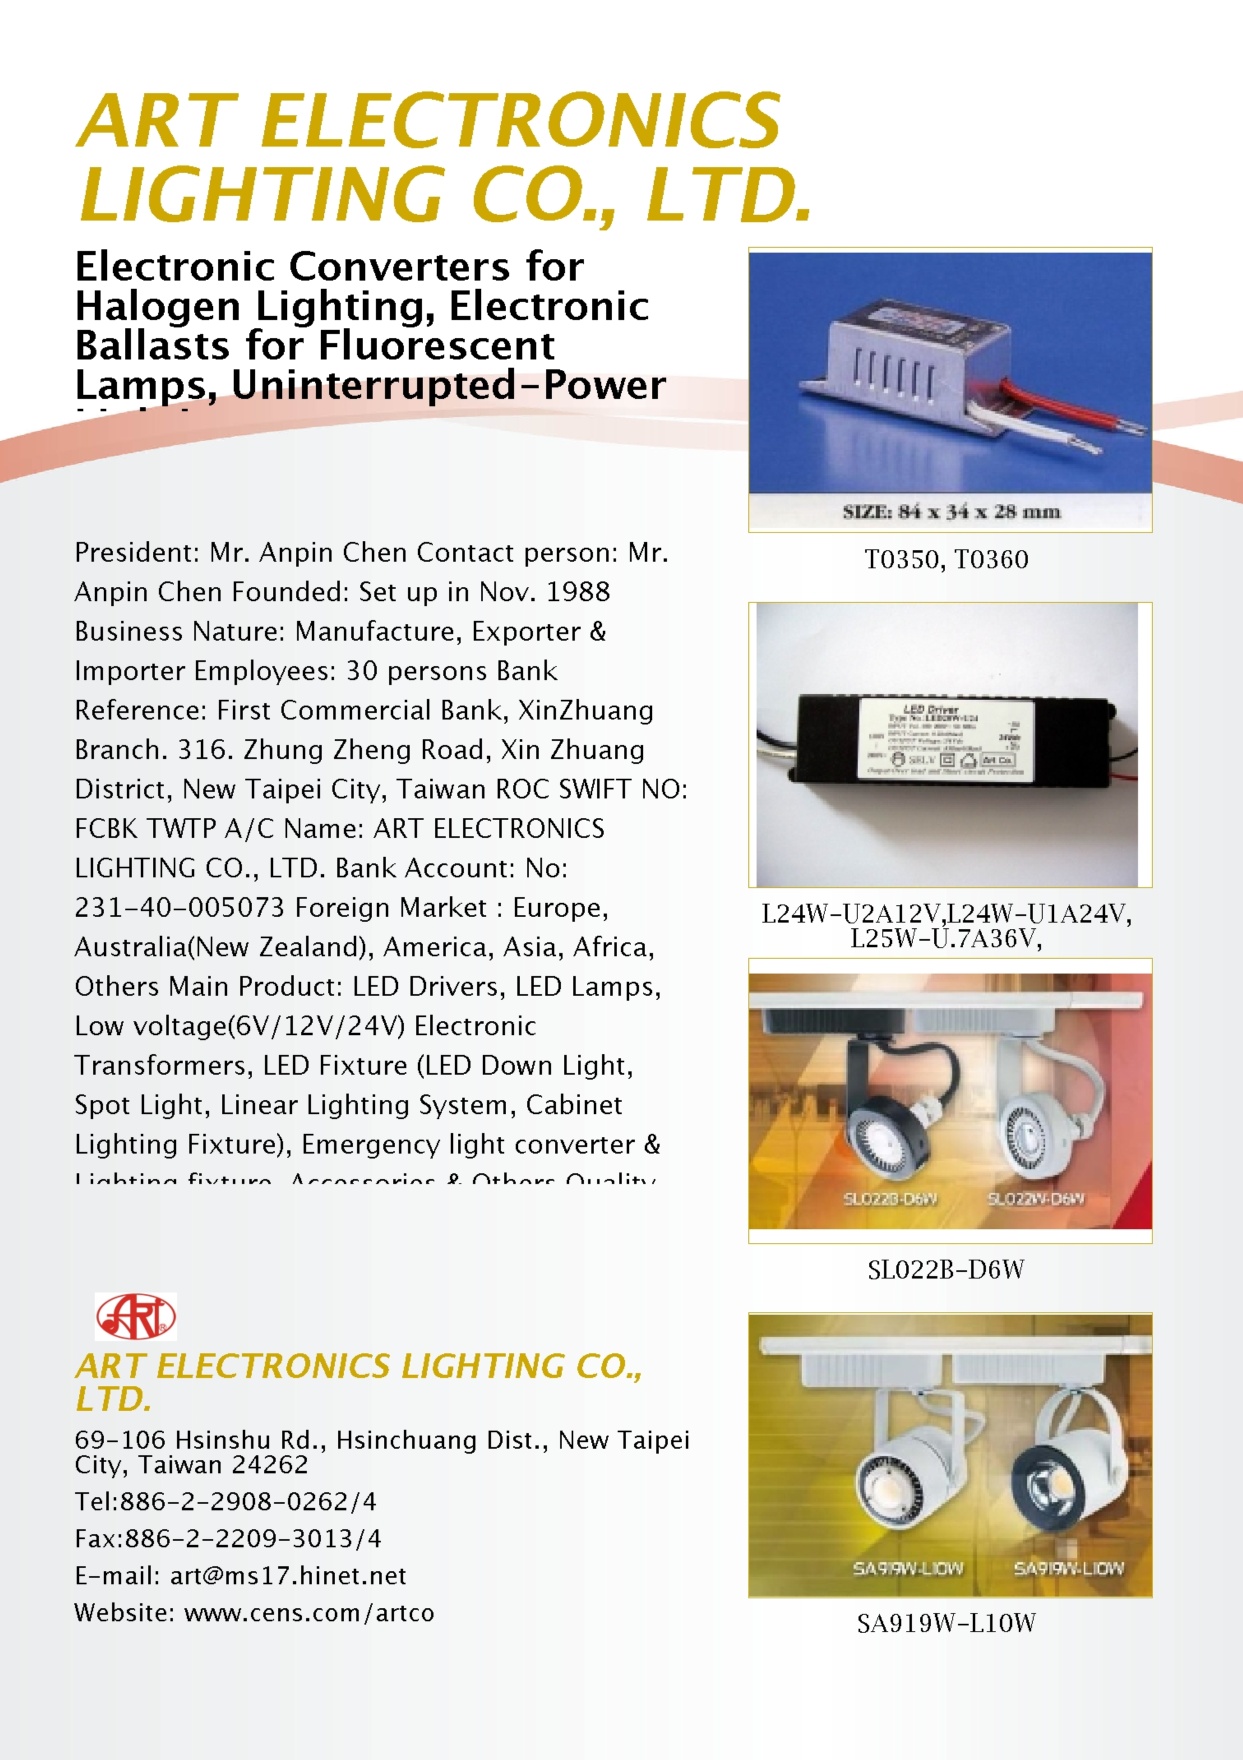 ART ELECTRONICS LIGHTING CO., LTD.